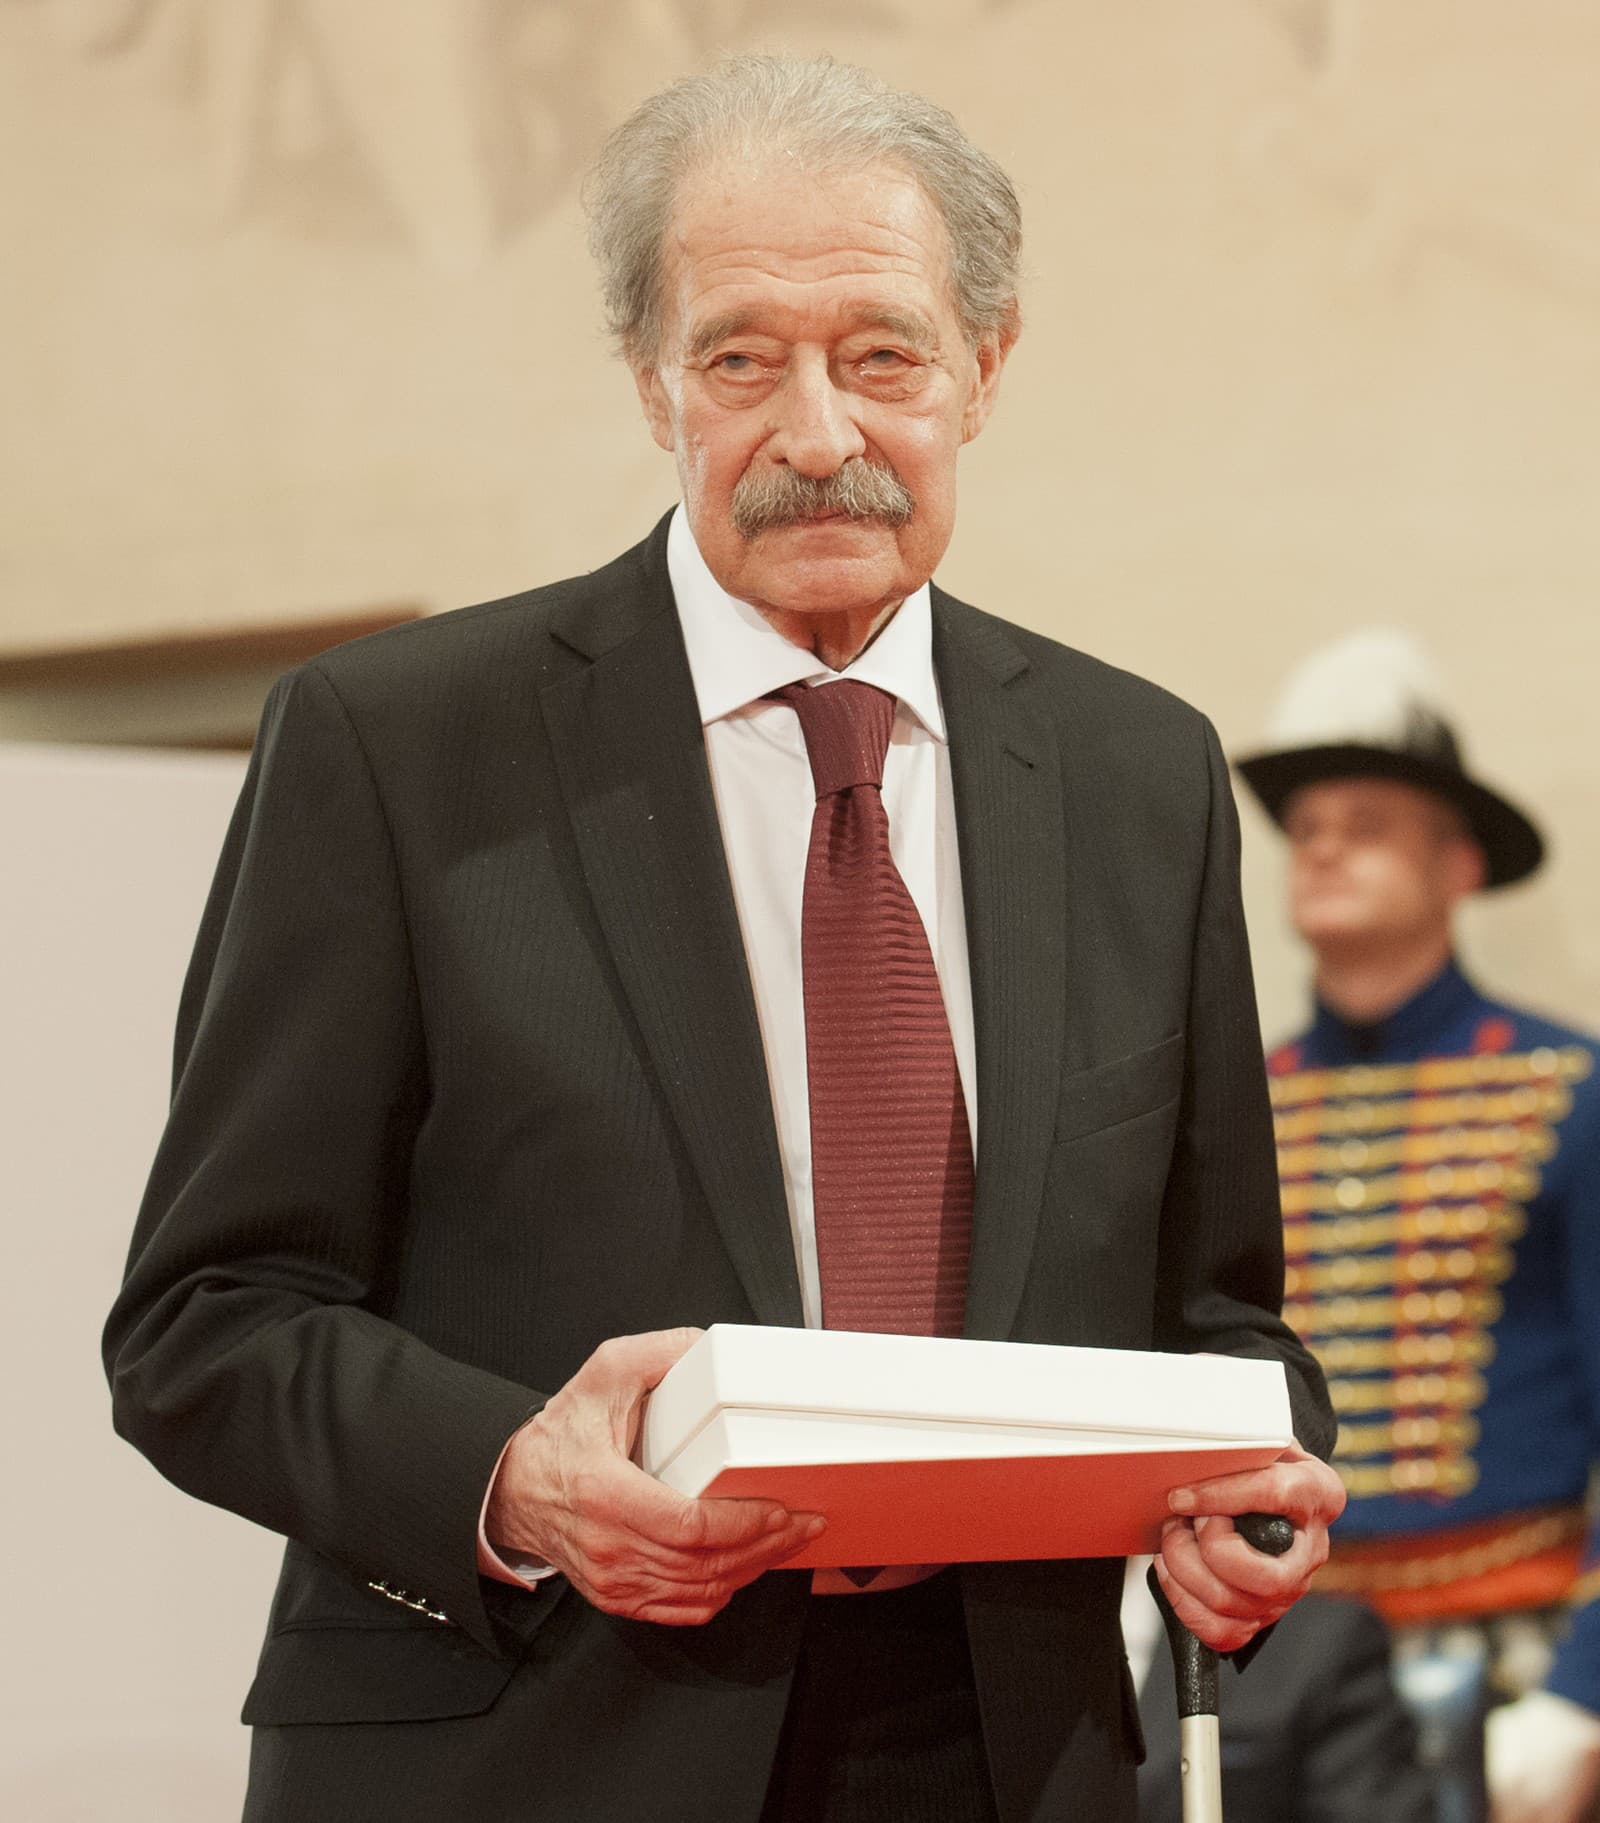 Tomáš Janovic dostal v roku 2017 štátne vyznamenanie - Rad Ľudovíta Štúra II. triedy.